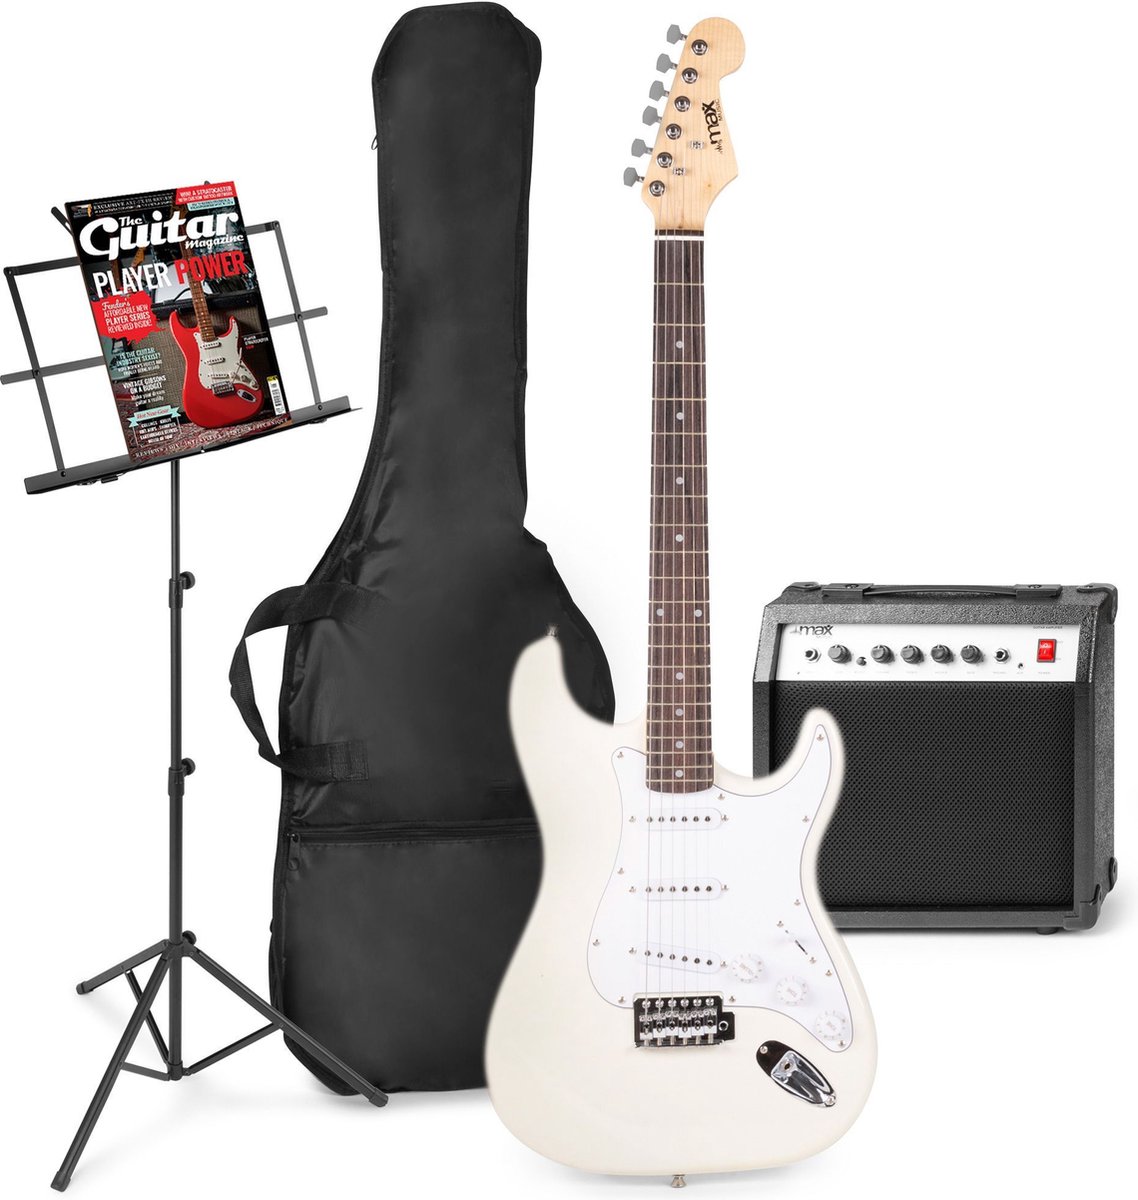 Elektrische gitaar met gitaar versterker - MAX Gigkit - Perfect voor beginners - incl. muziekstandaard, gitaar stemapparaat, gitaartas en plectrum - Wit